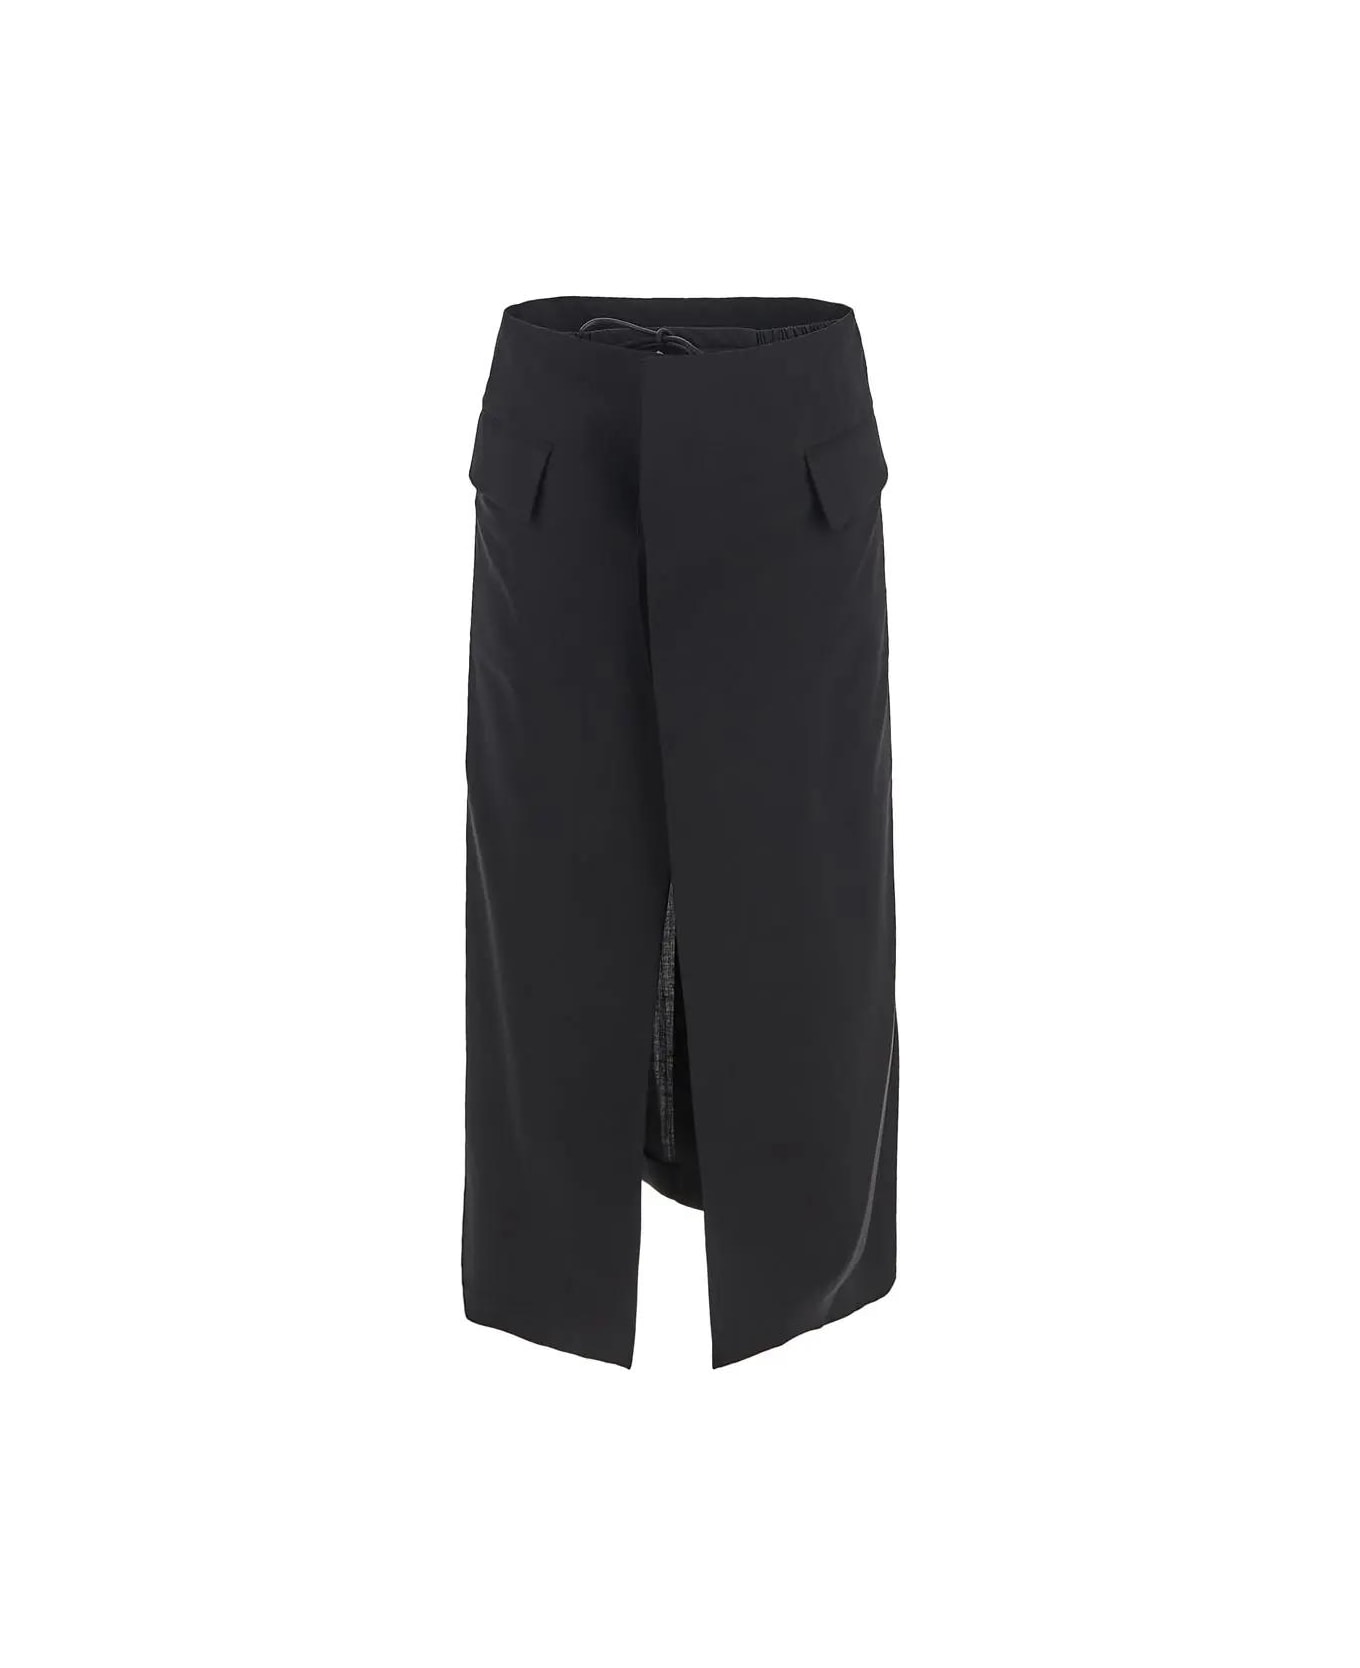 Sacai Short Midi Skirt - BLACK スカート